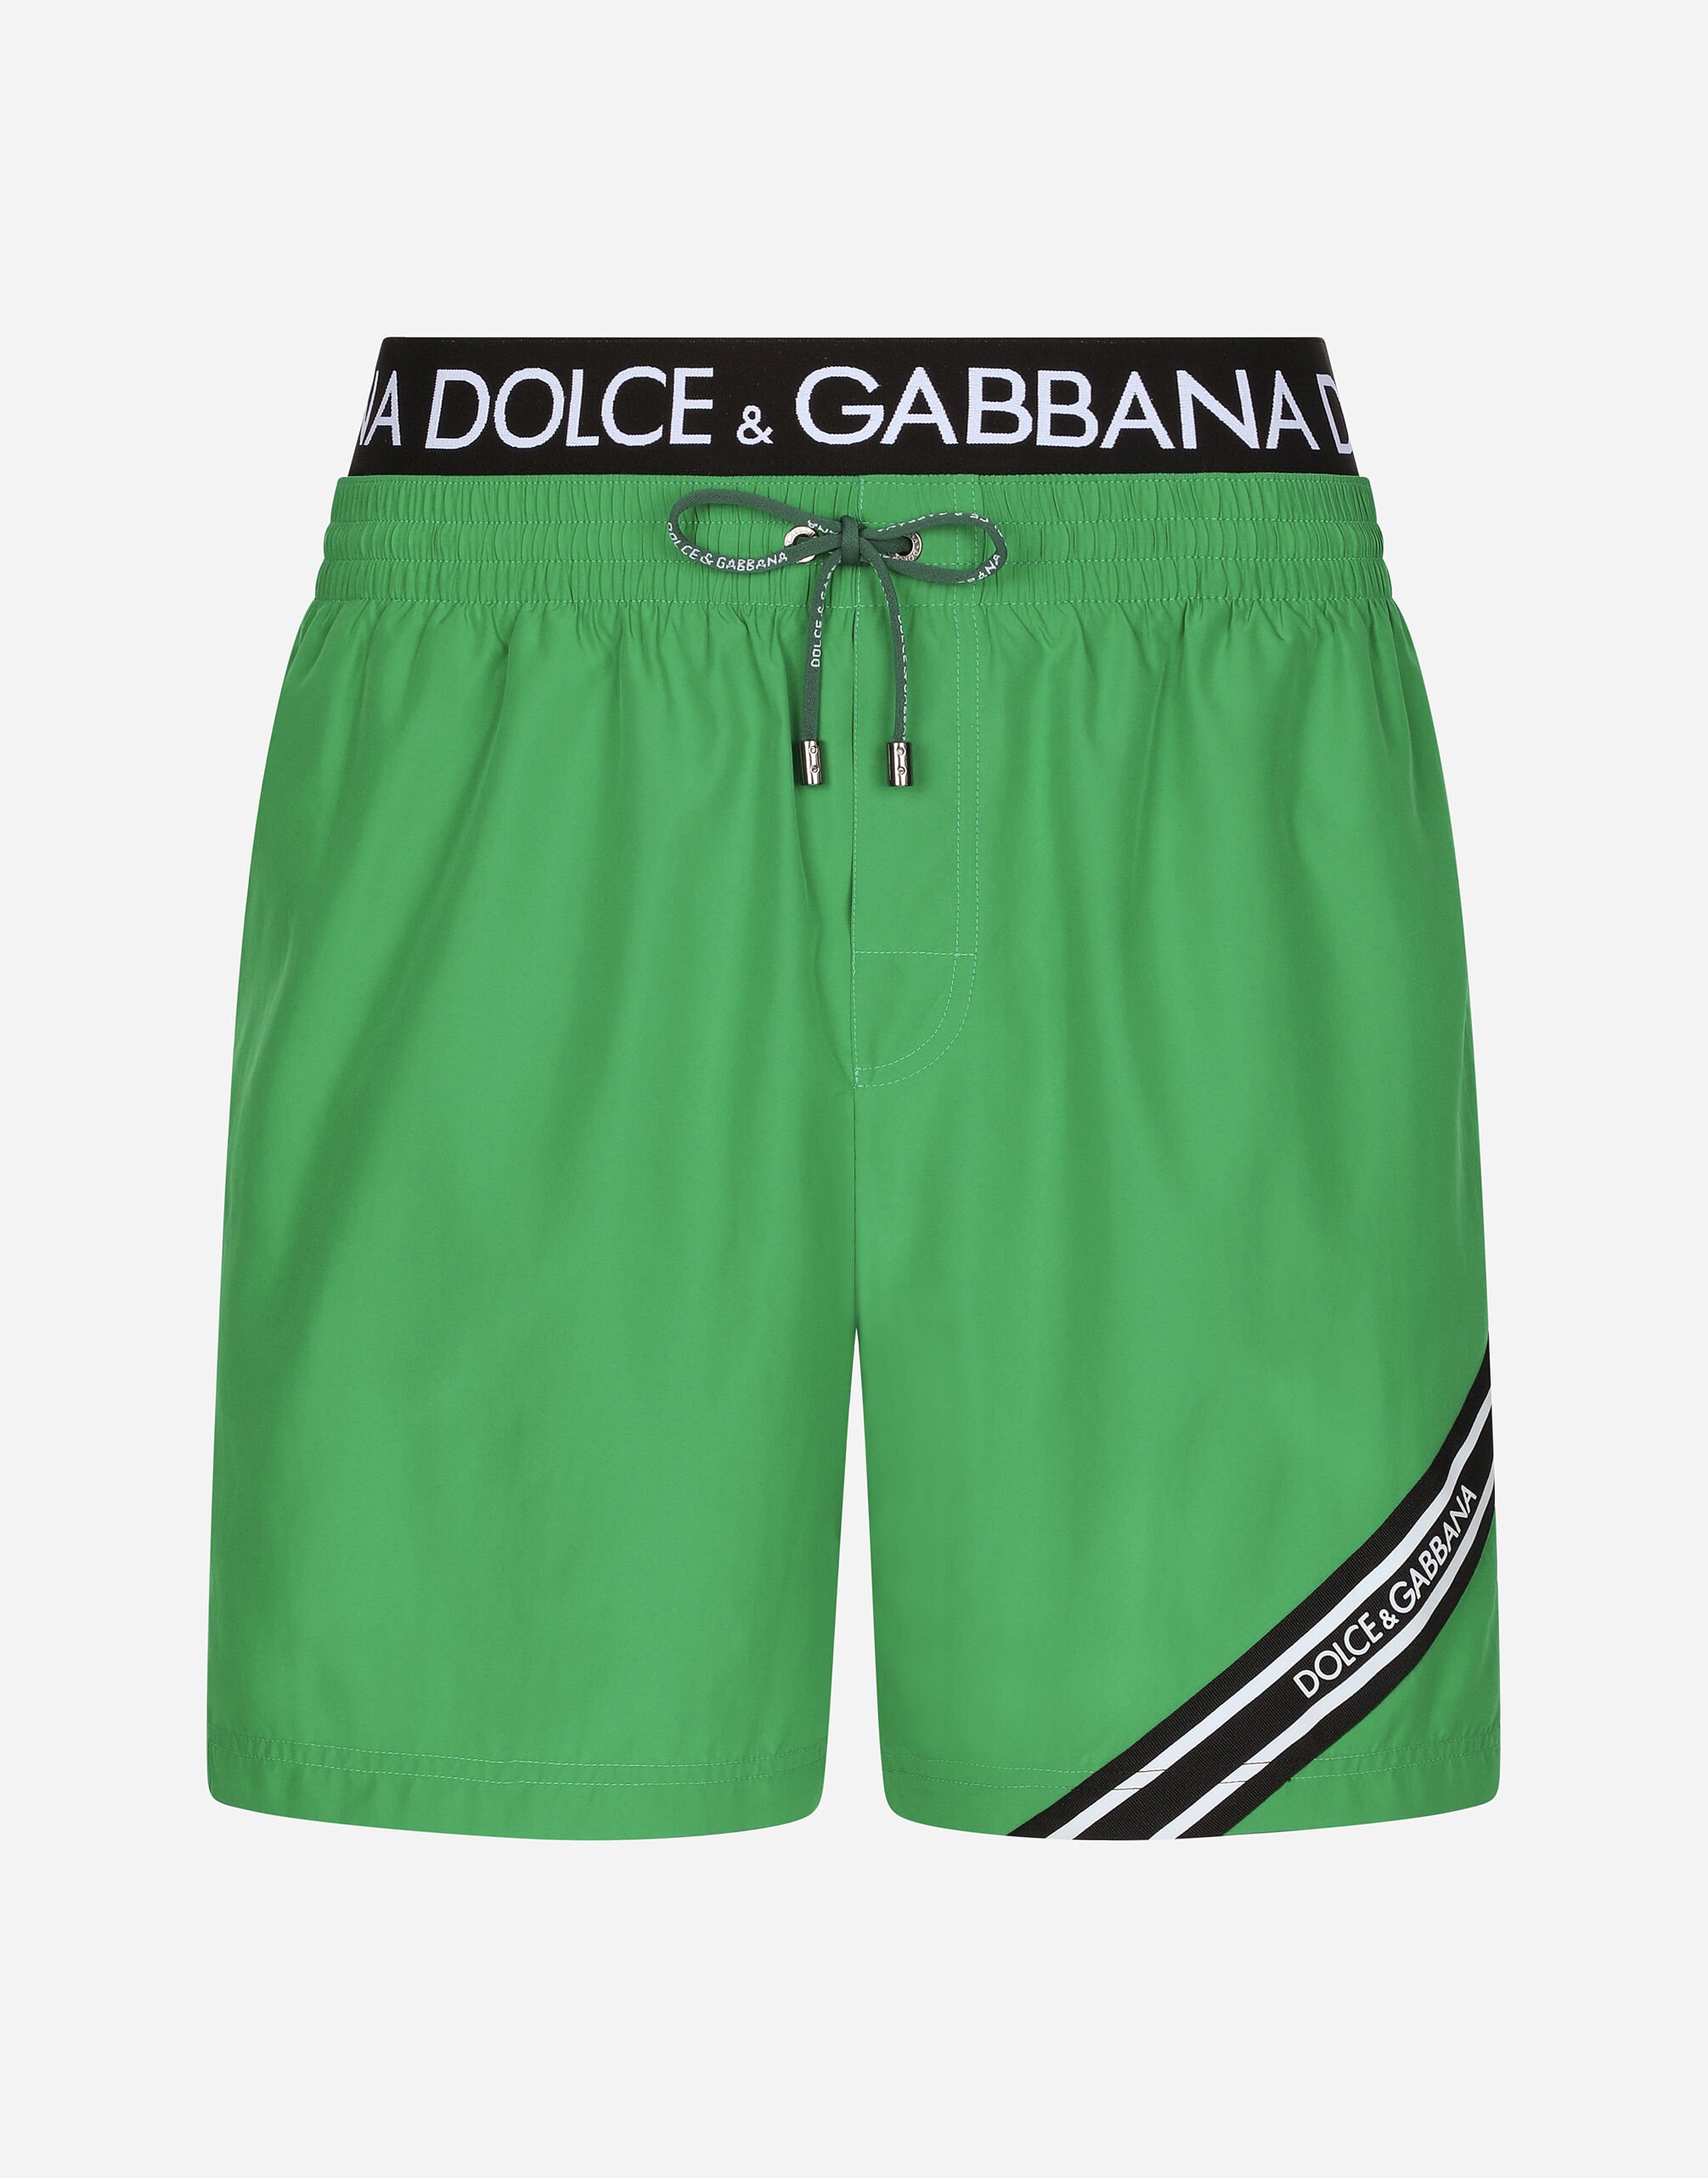 Dolce & Gabbana Пляжные боксеры средней длины с фирменными лампасами принт M4E68TISMF5